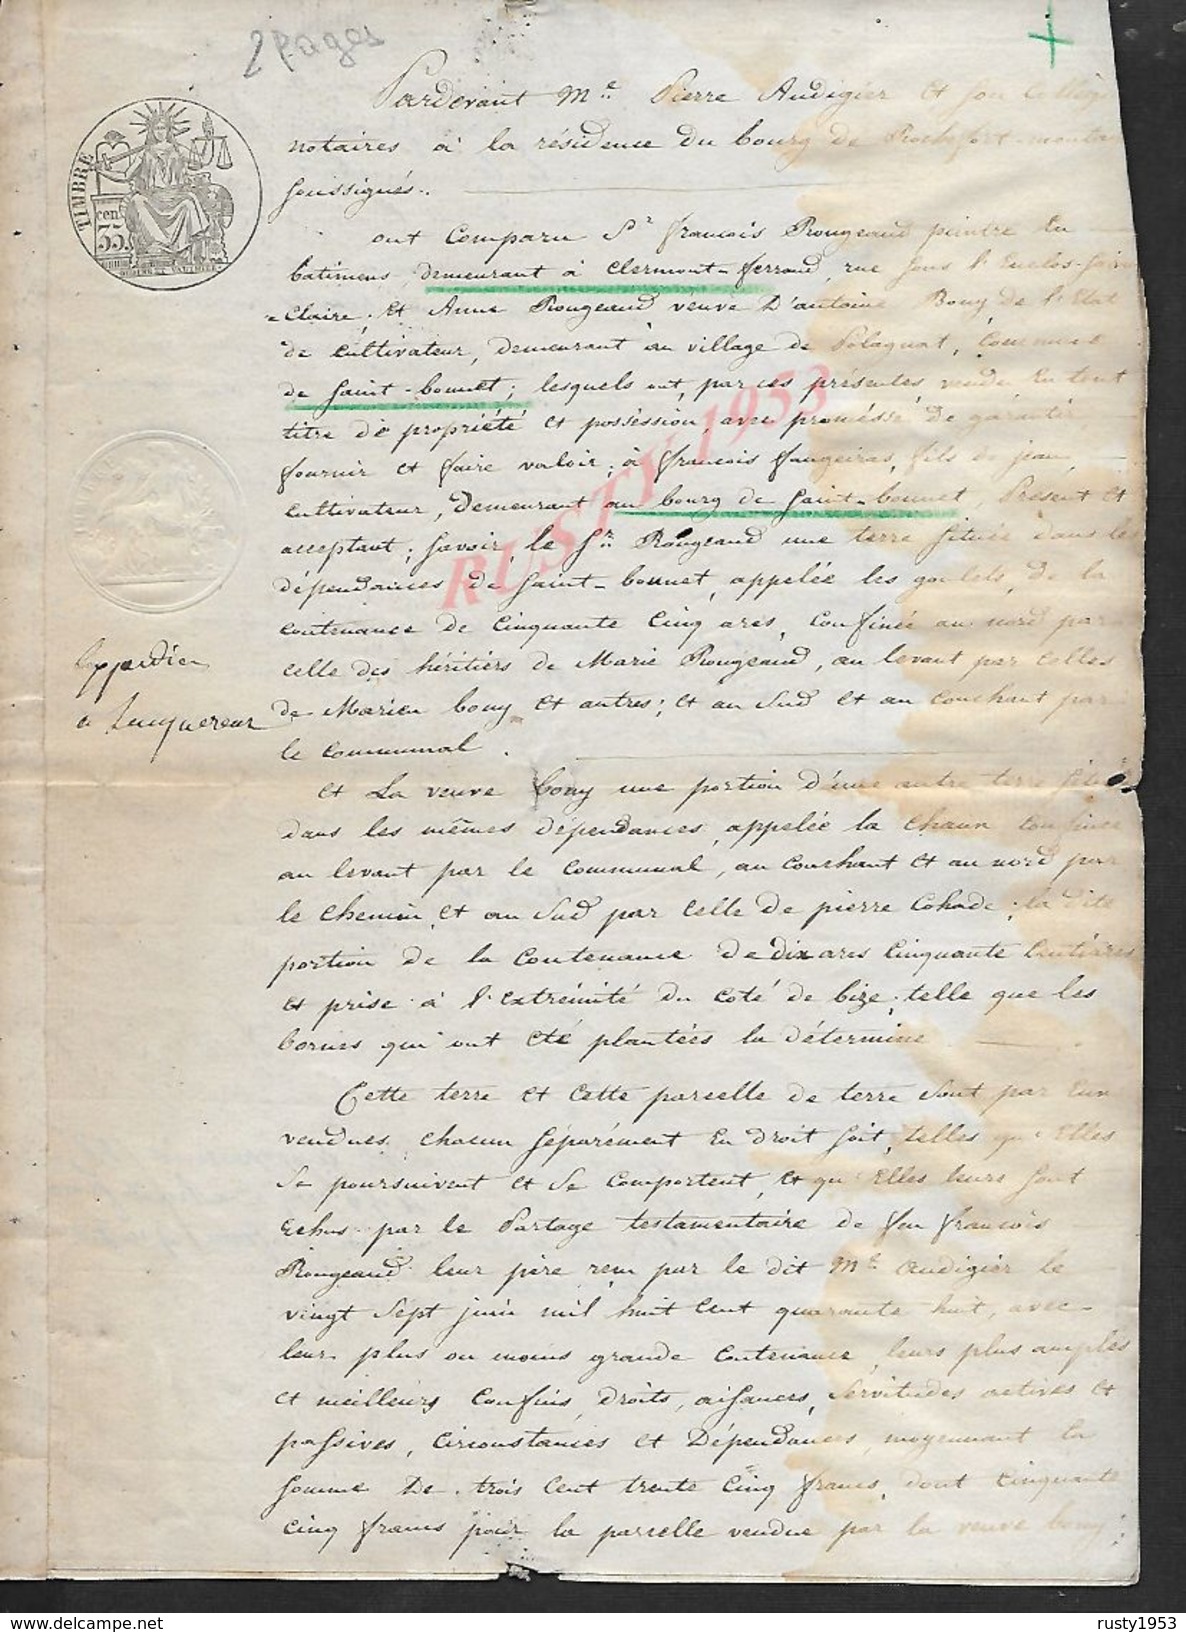 CLERMONT FERRAND SAINT BONNET 1852 ACTE VENTE D UNE TERRE POUR FRANCOIS FAUGEIRAS CONTRE FRANCOIS BOUGEAUT 2PAGES : - Manuscripts